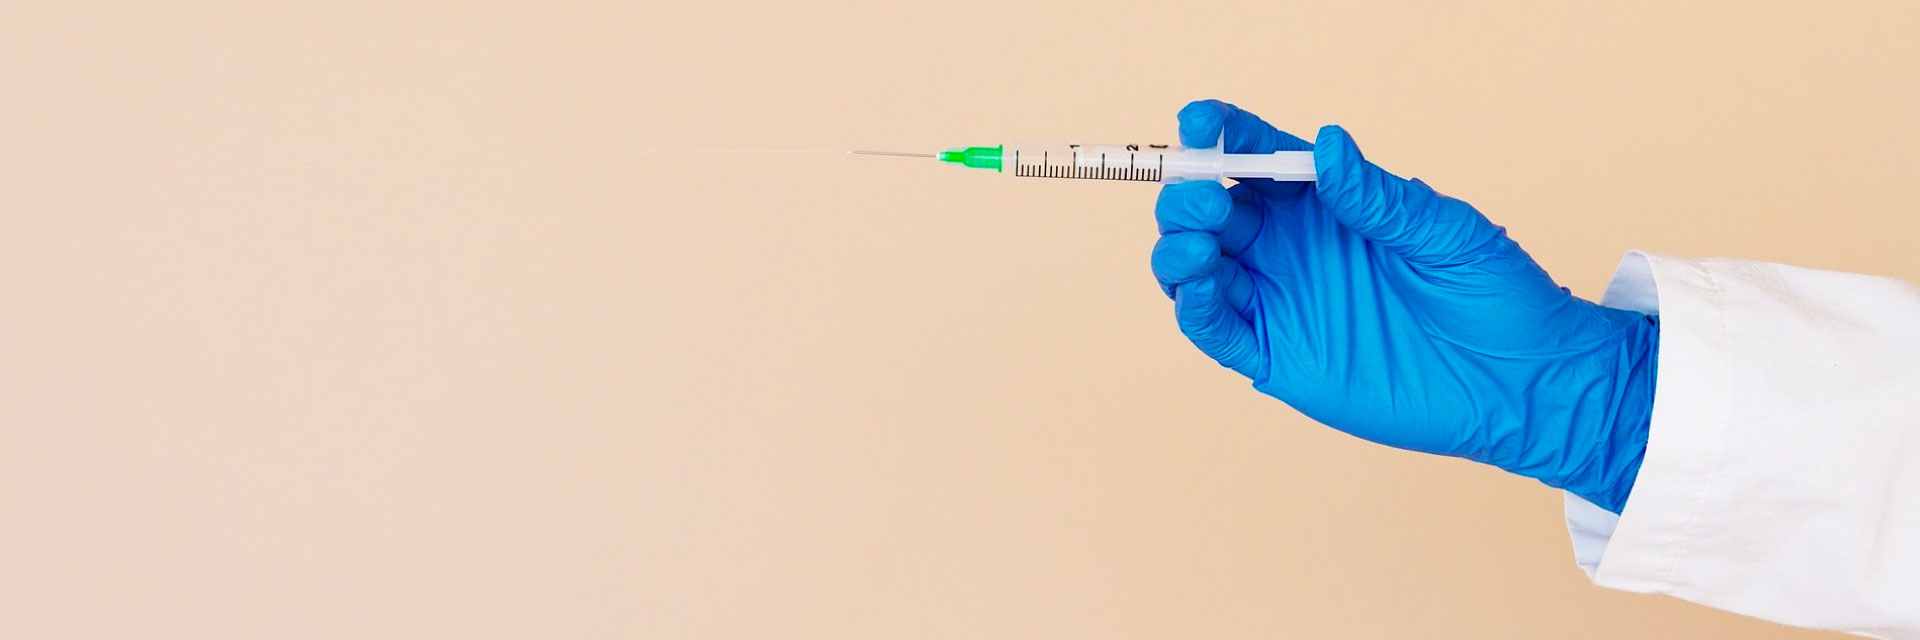 Vacina contra Covid-19: Dúvidas sobre a vacinação no Brasil